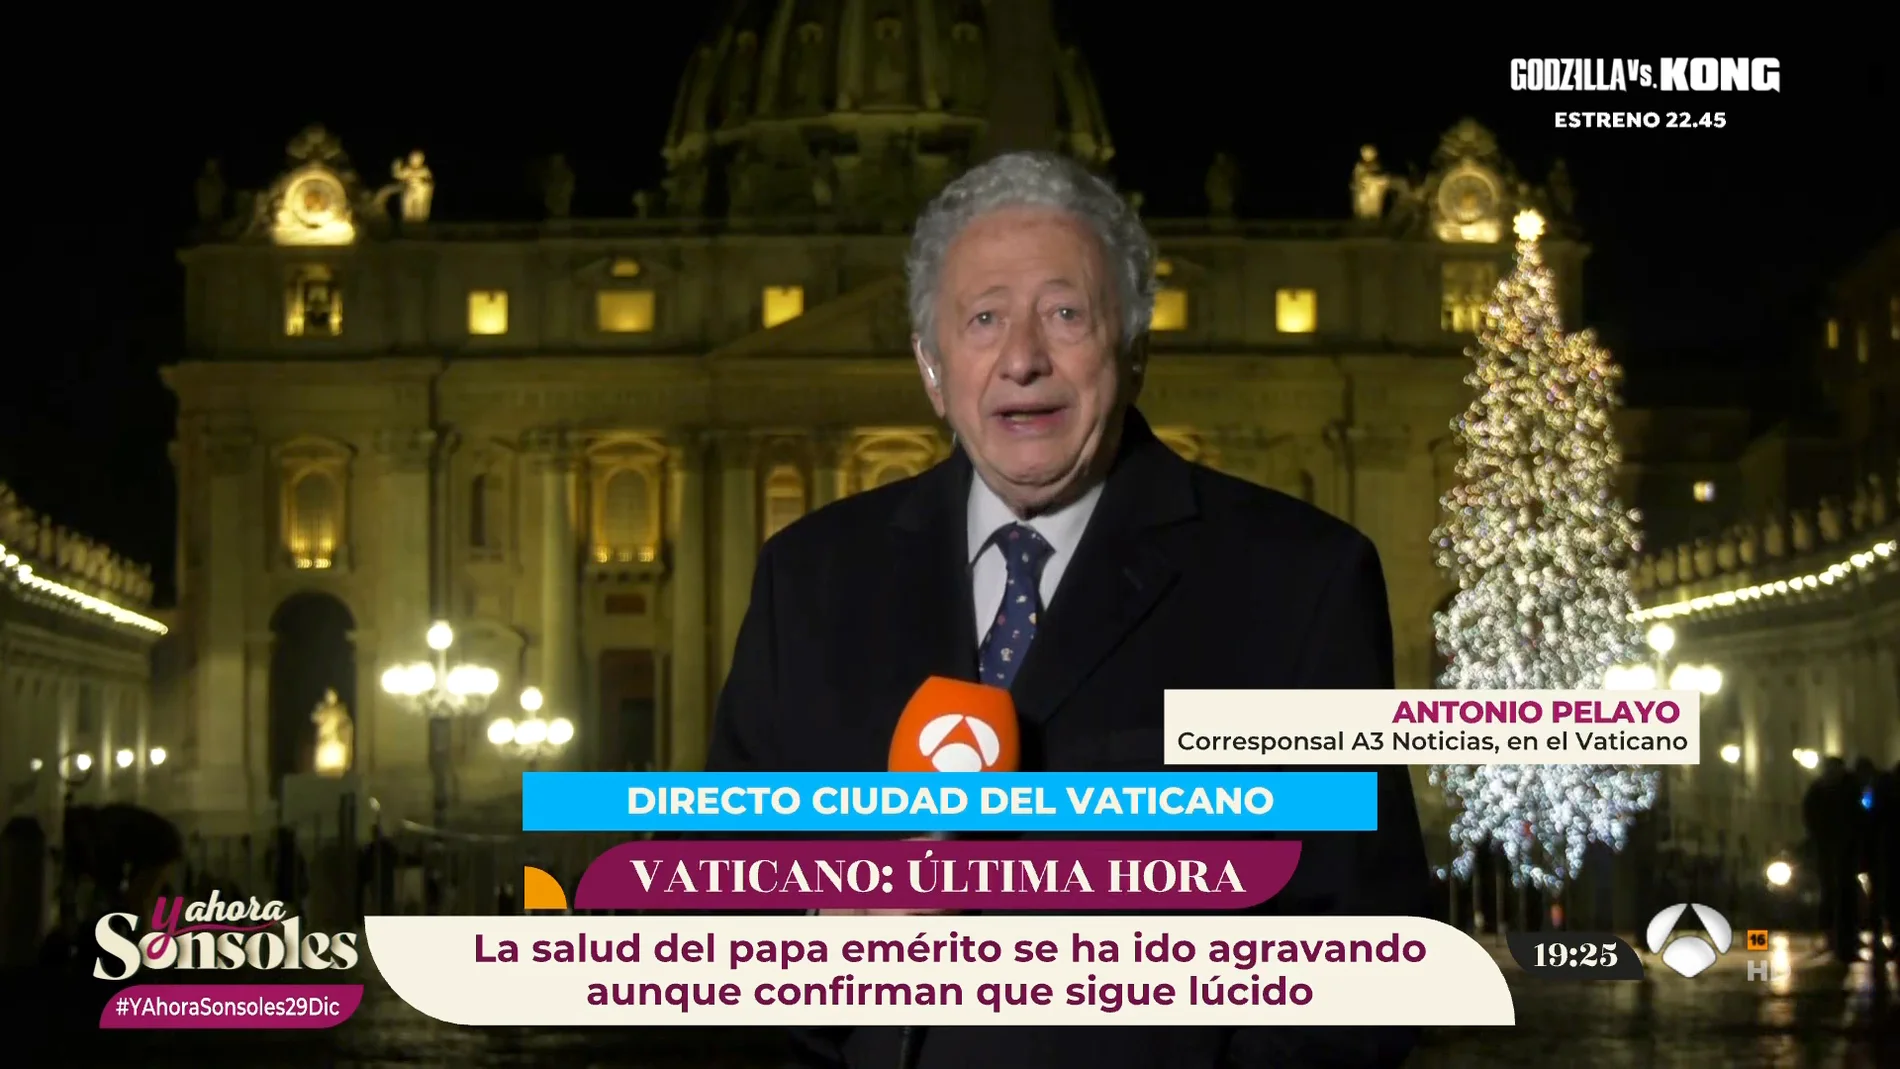 Antonio Pelayo, corresponsal en El Vaticano: "Está lúcido y espera superar esta doble crisis de salud"